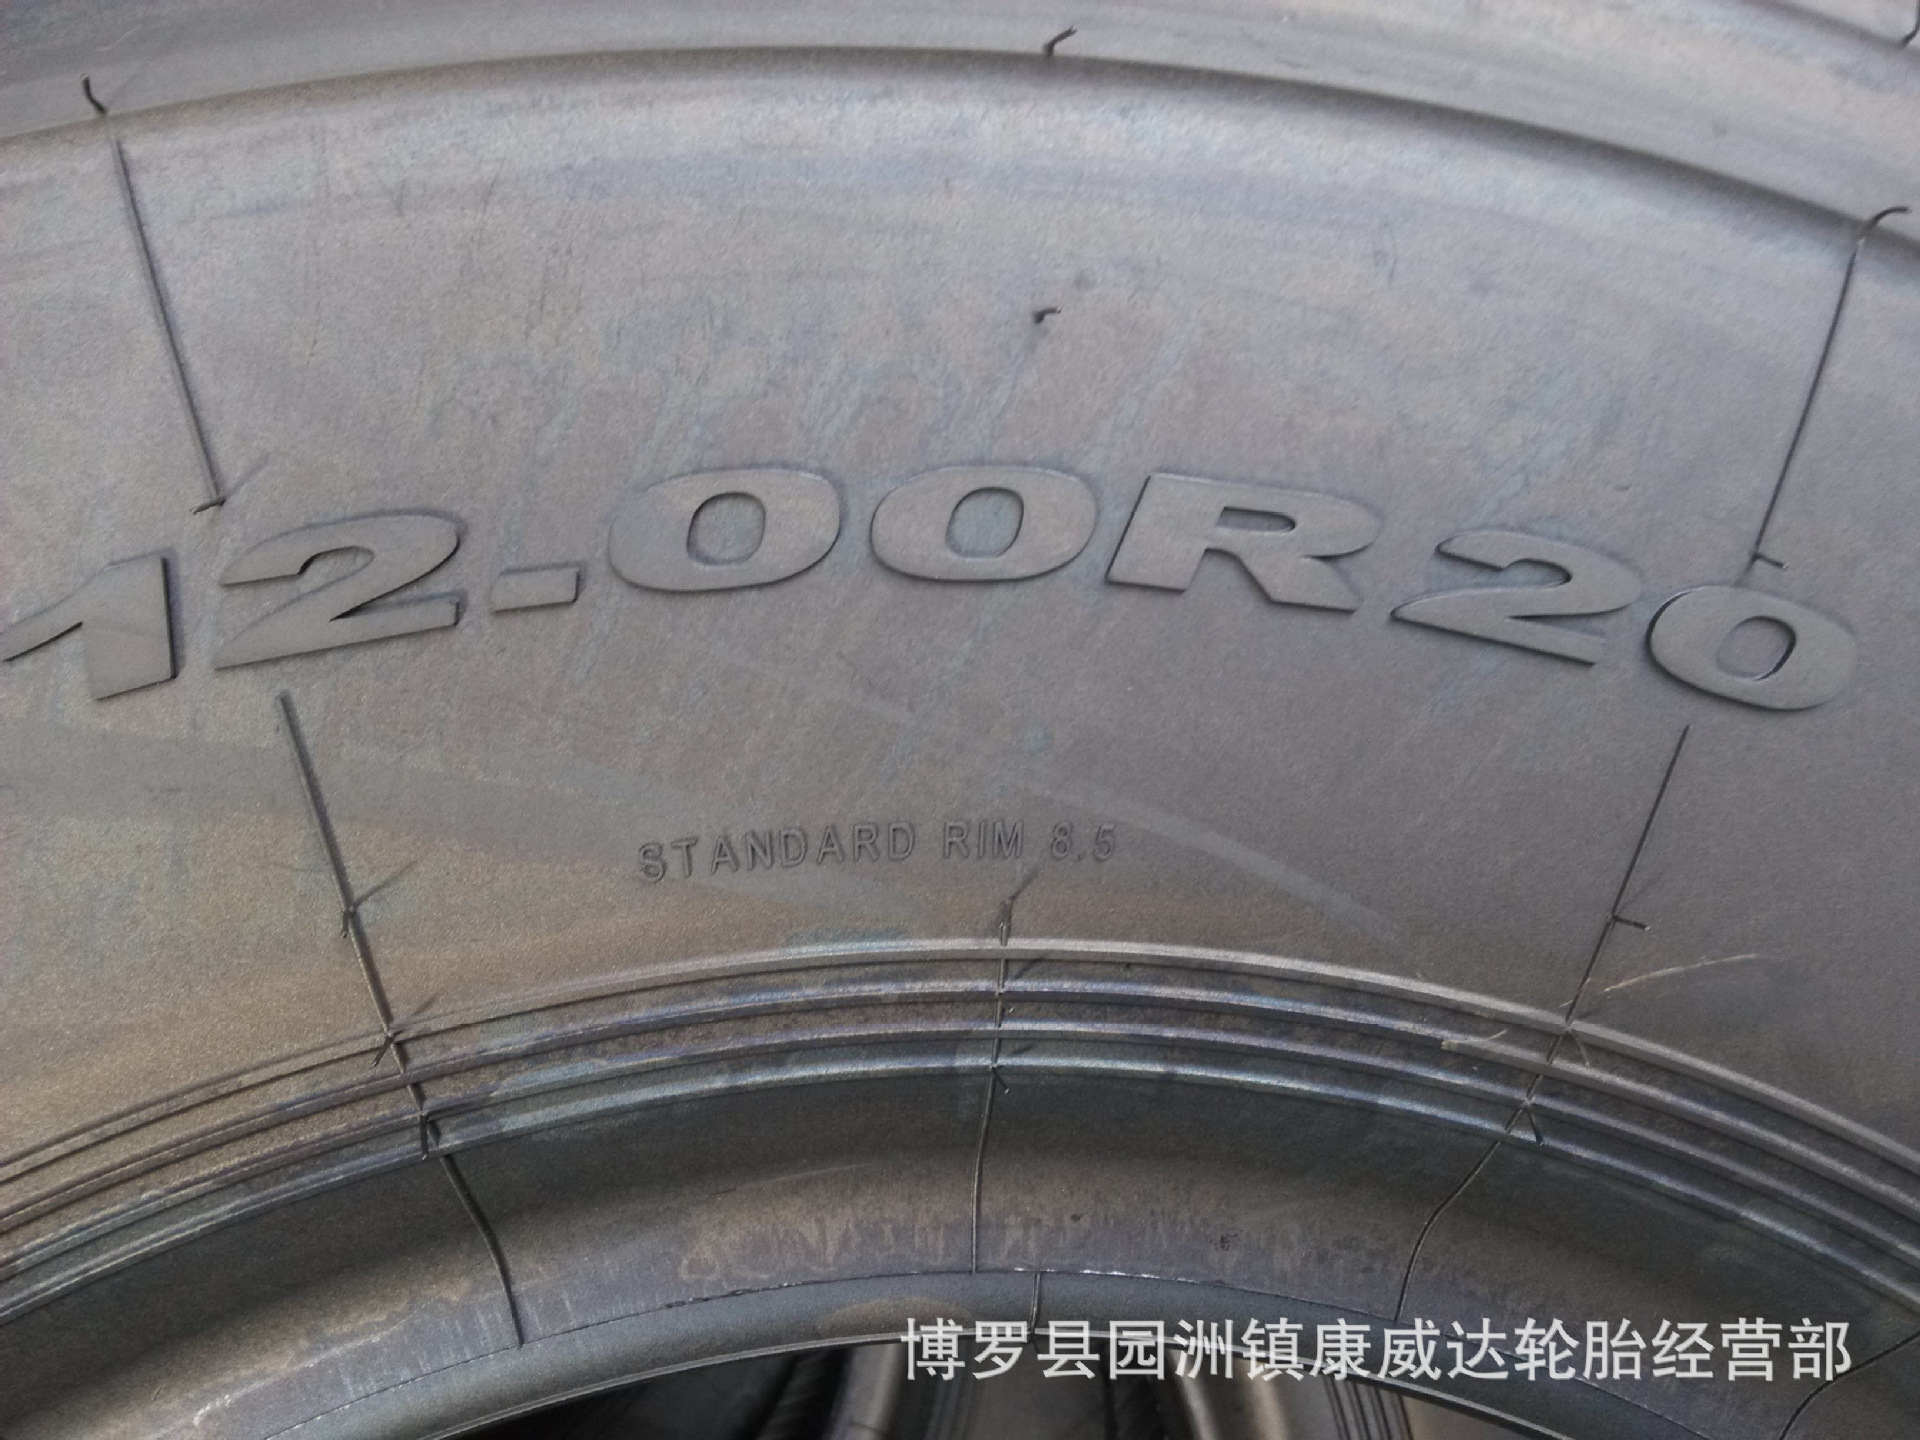 全新正品上海金吉全钢丝载重轮胎1200r20 20层 jj18 超耐磨,抗载